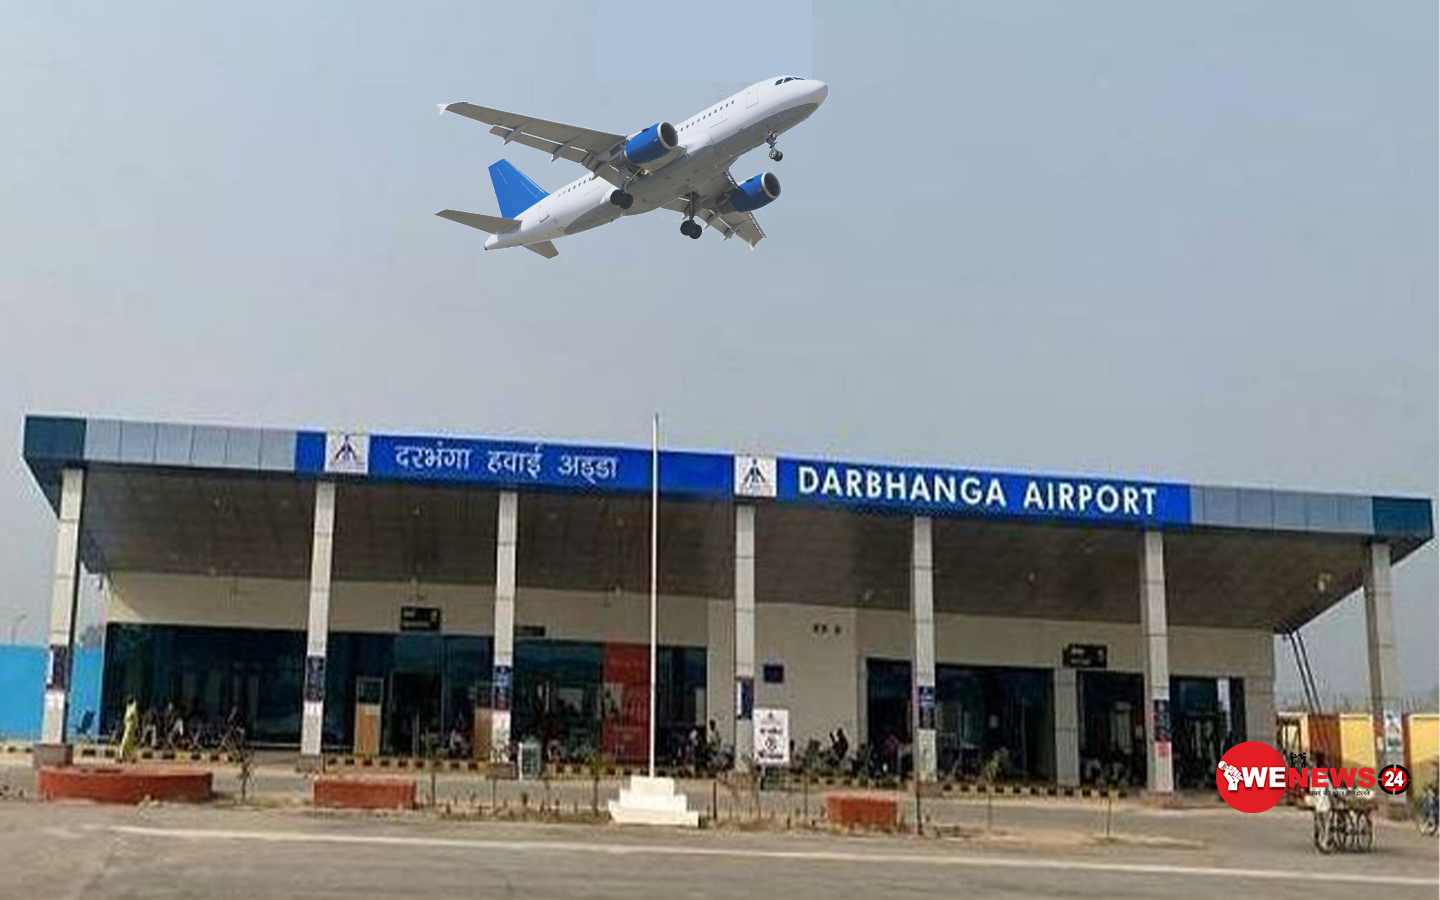 दरभंगा एयरपोर्ट के नामो की बदलने की तैयारी ,बिहार सरकार भेजा भारत सरकार को सिफारिश 